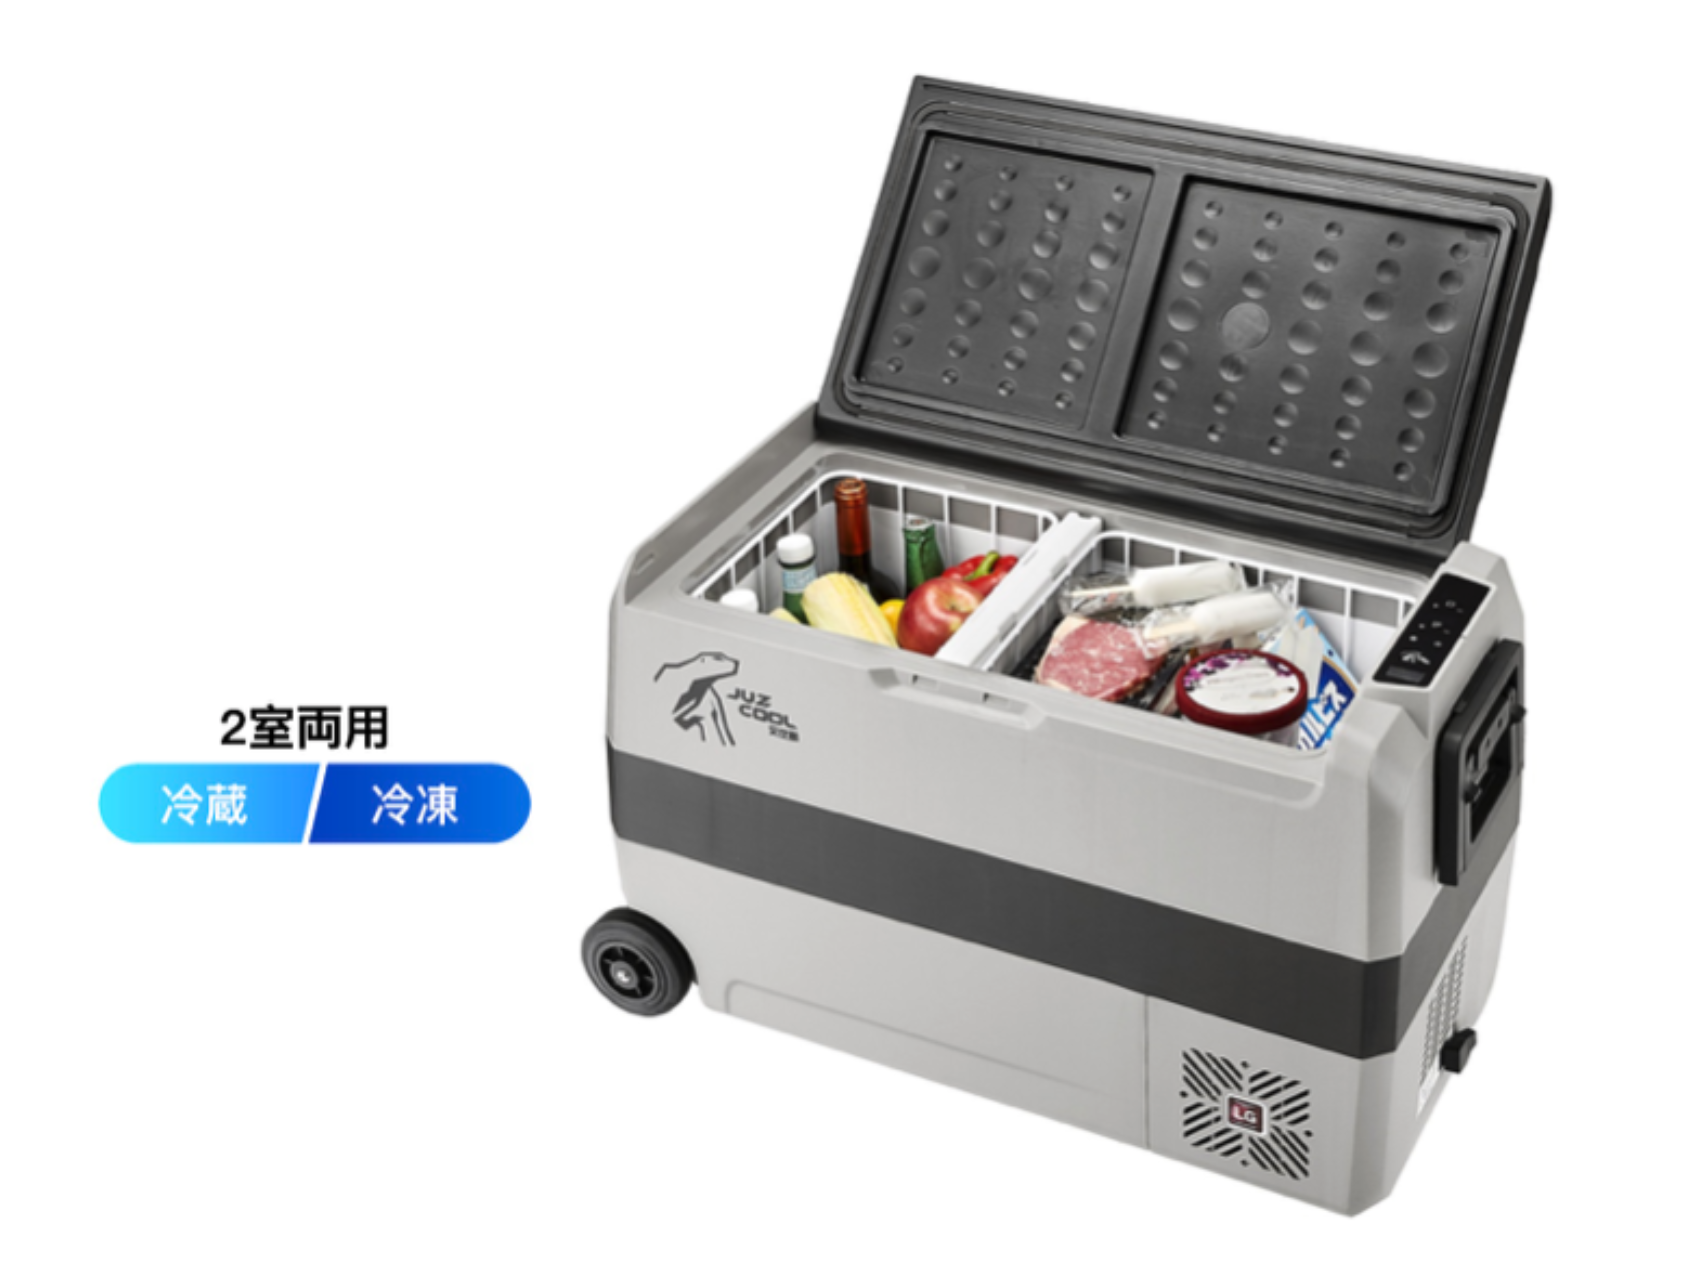 驚速冷凍 で45w省エネ設計 車載用ポータブル冷凍 冷蔵庫 7 まで Engadget 日本版